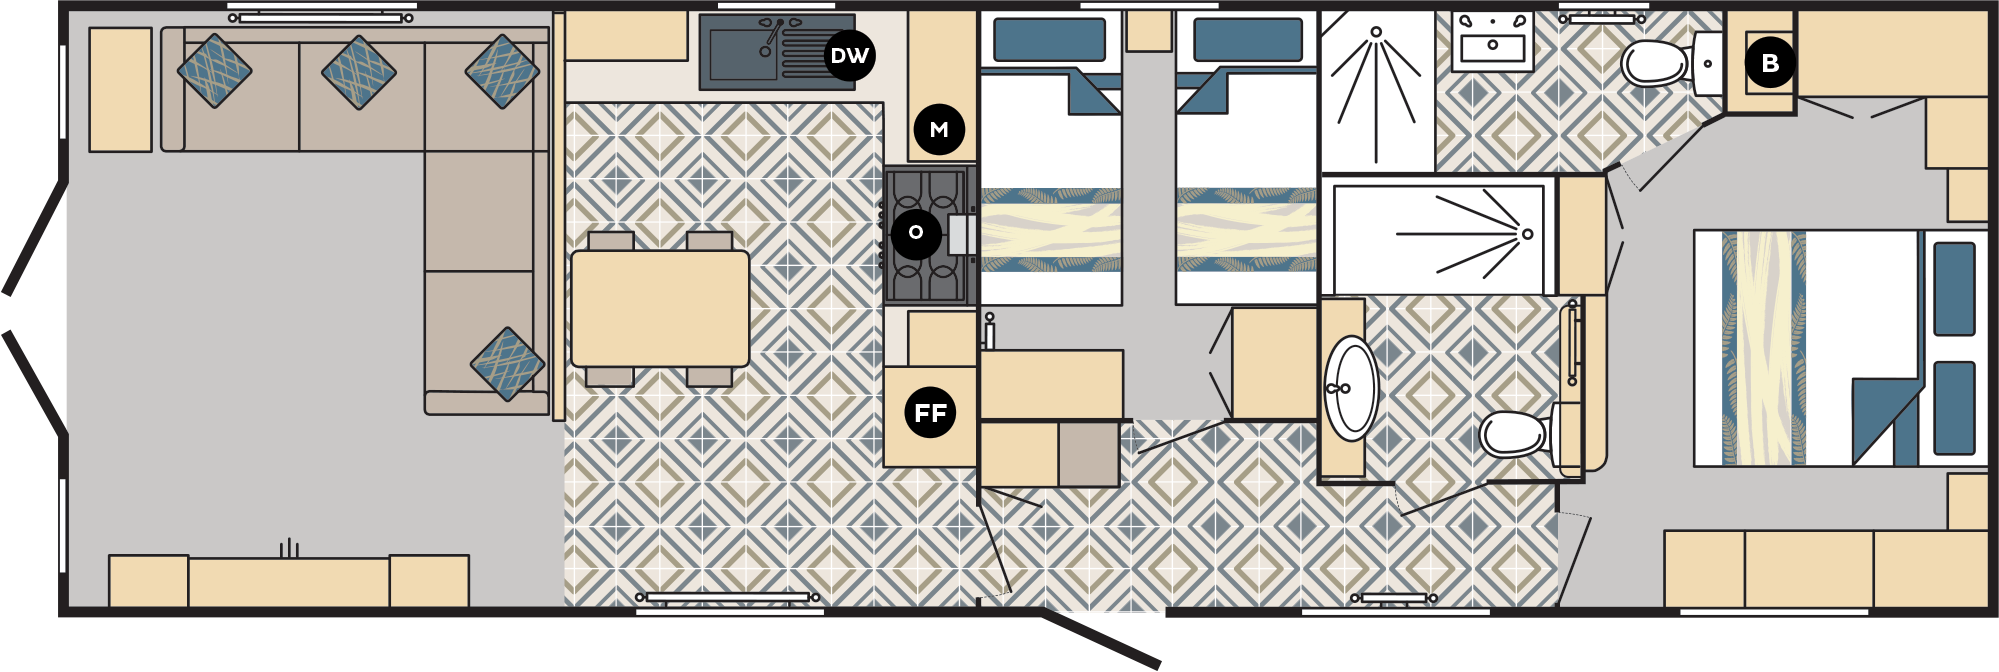 Carnaby Chantry Lodge 41x13 2 bedroom static caravan mobile home floorplan